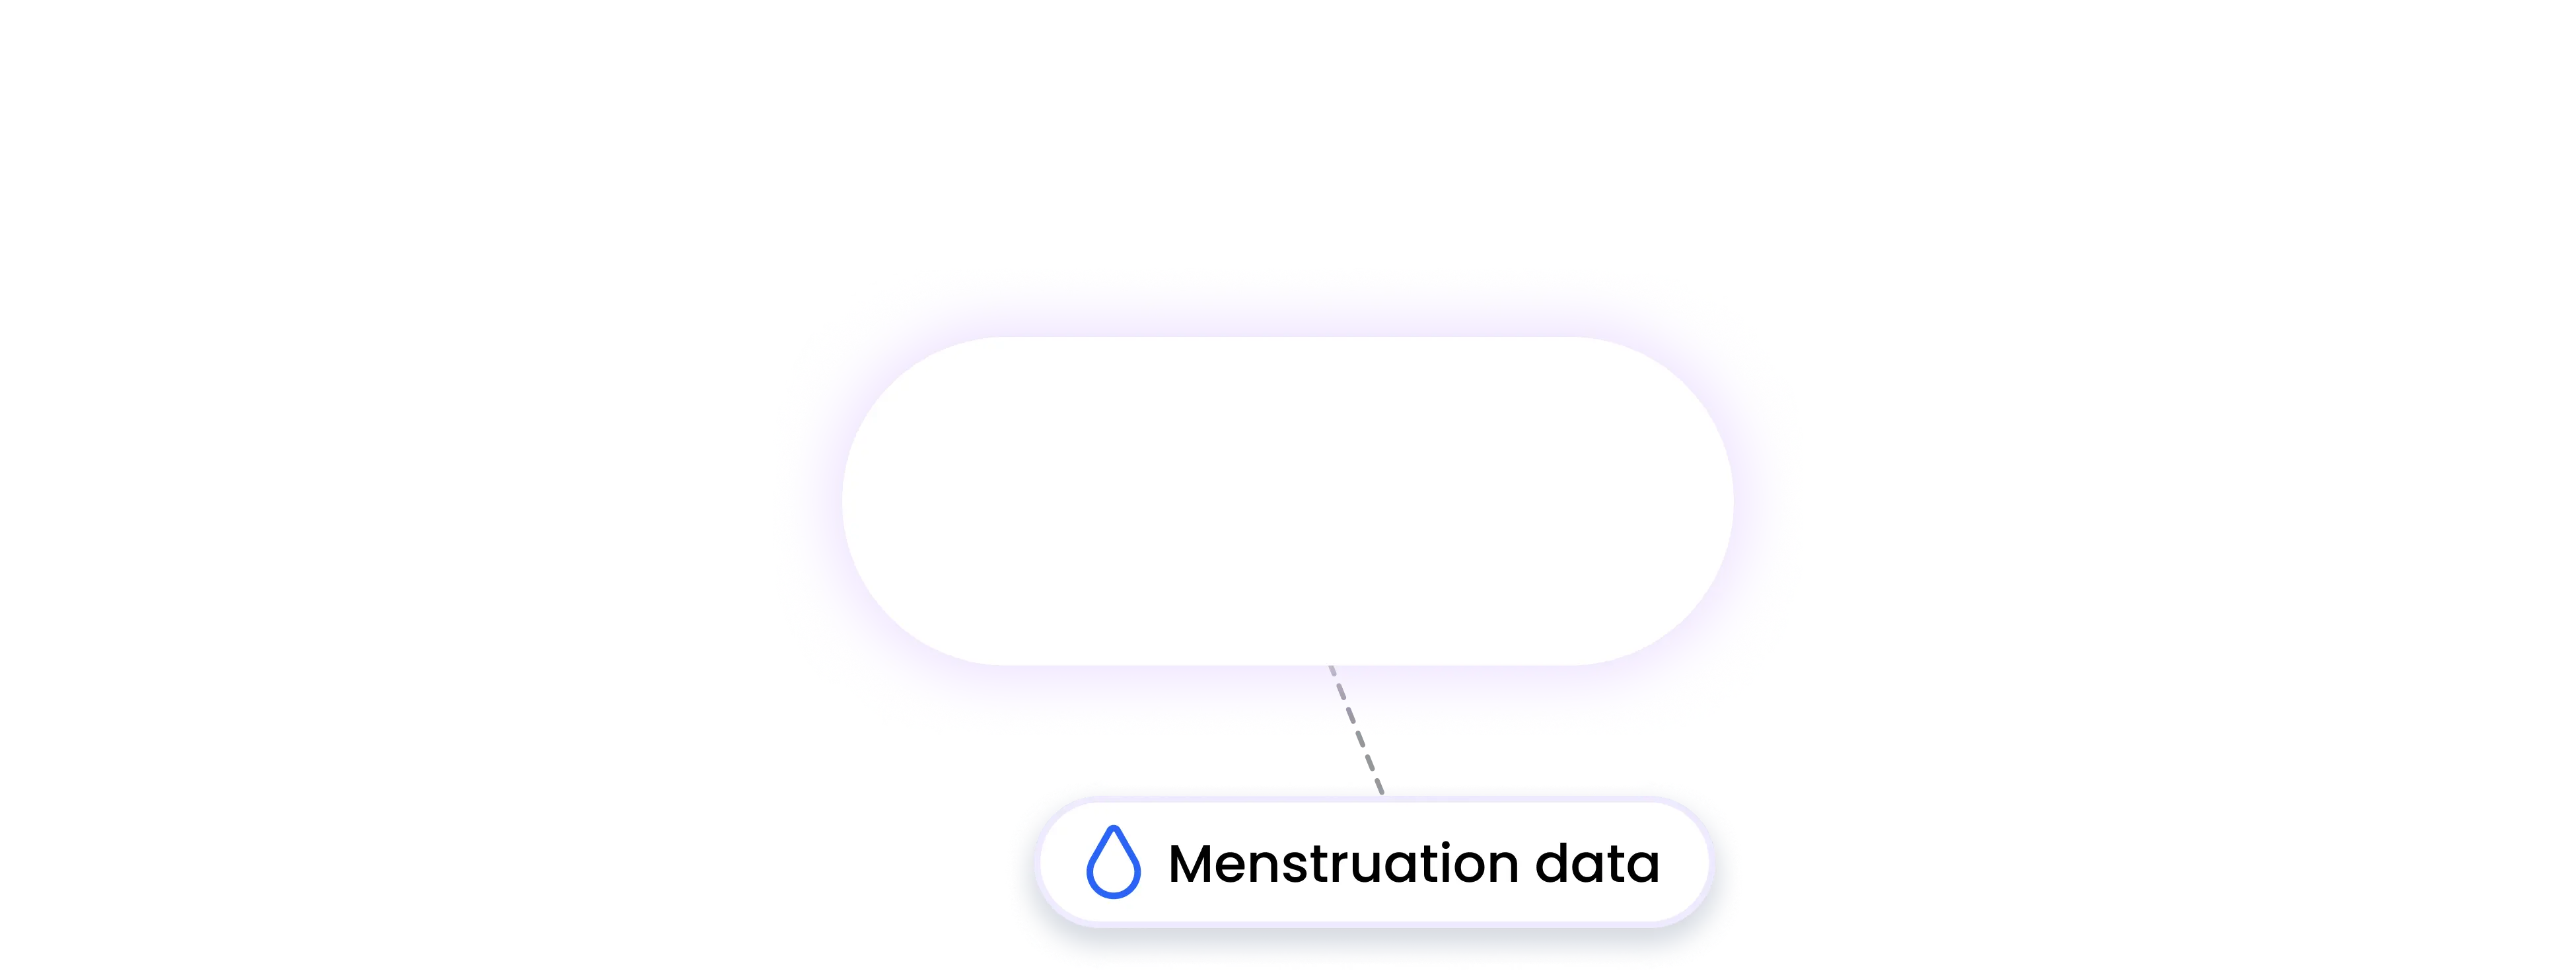 samsung integration MENSTRUATION data